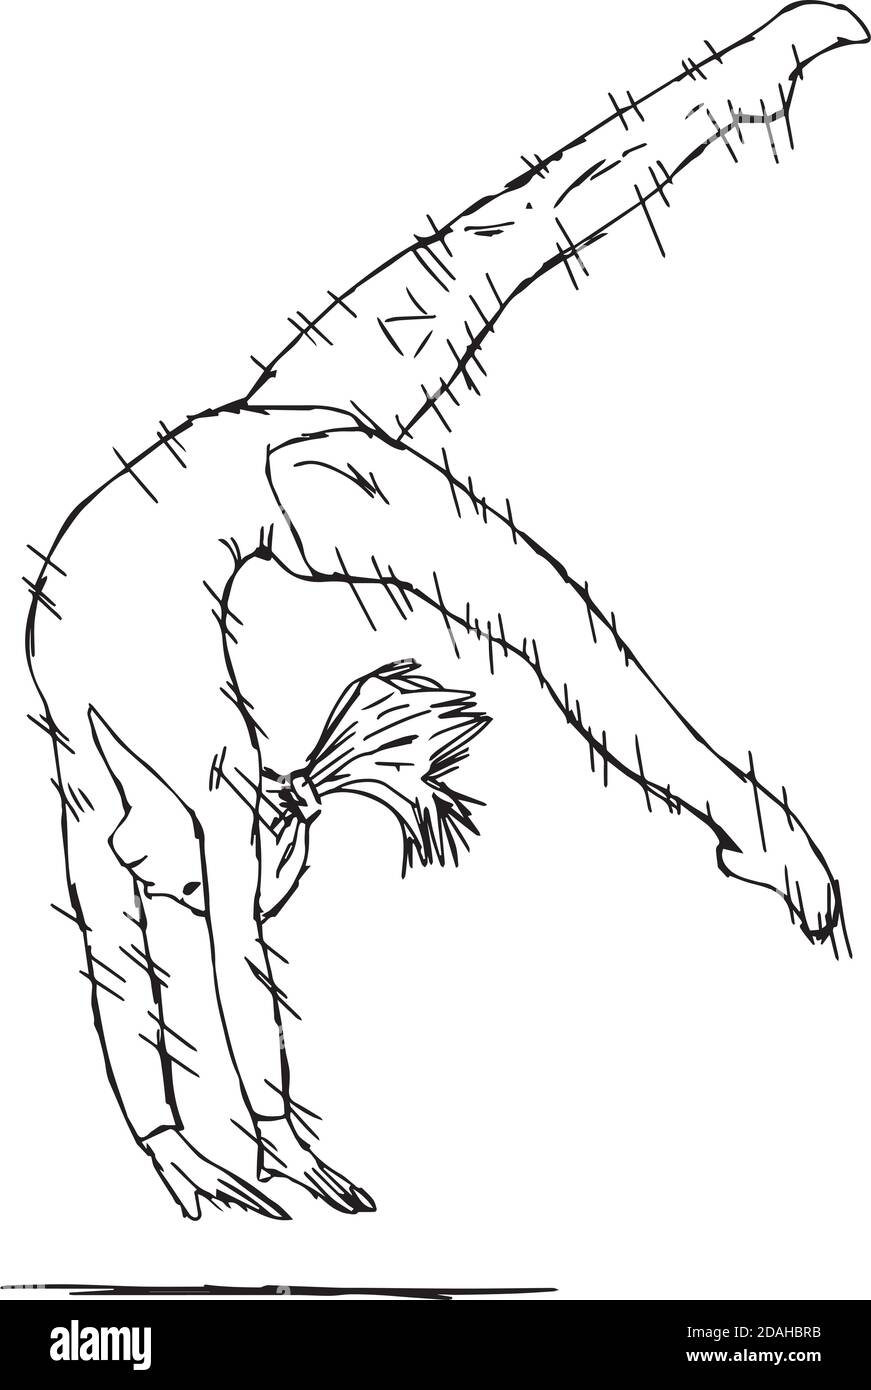 Illustration Vektor Doodle Hand gezeichnet von jungen fit Turnerin Frau Performing Art Gymnastik Element mit Geschwindigkeit Linien Stock Vektor